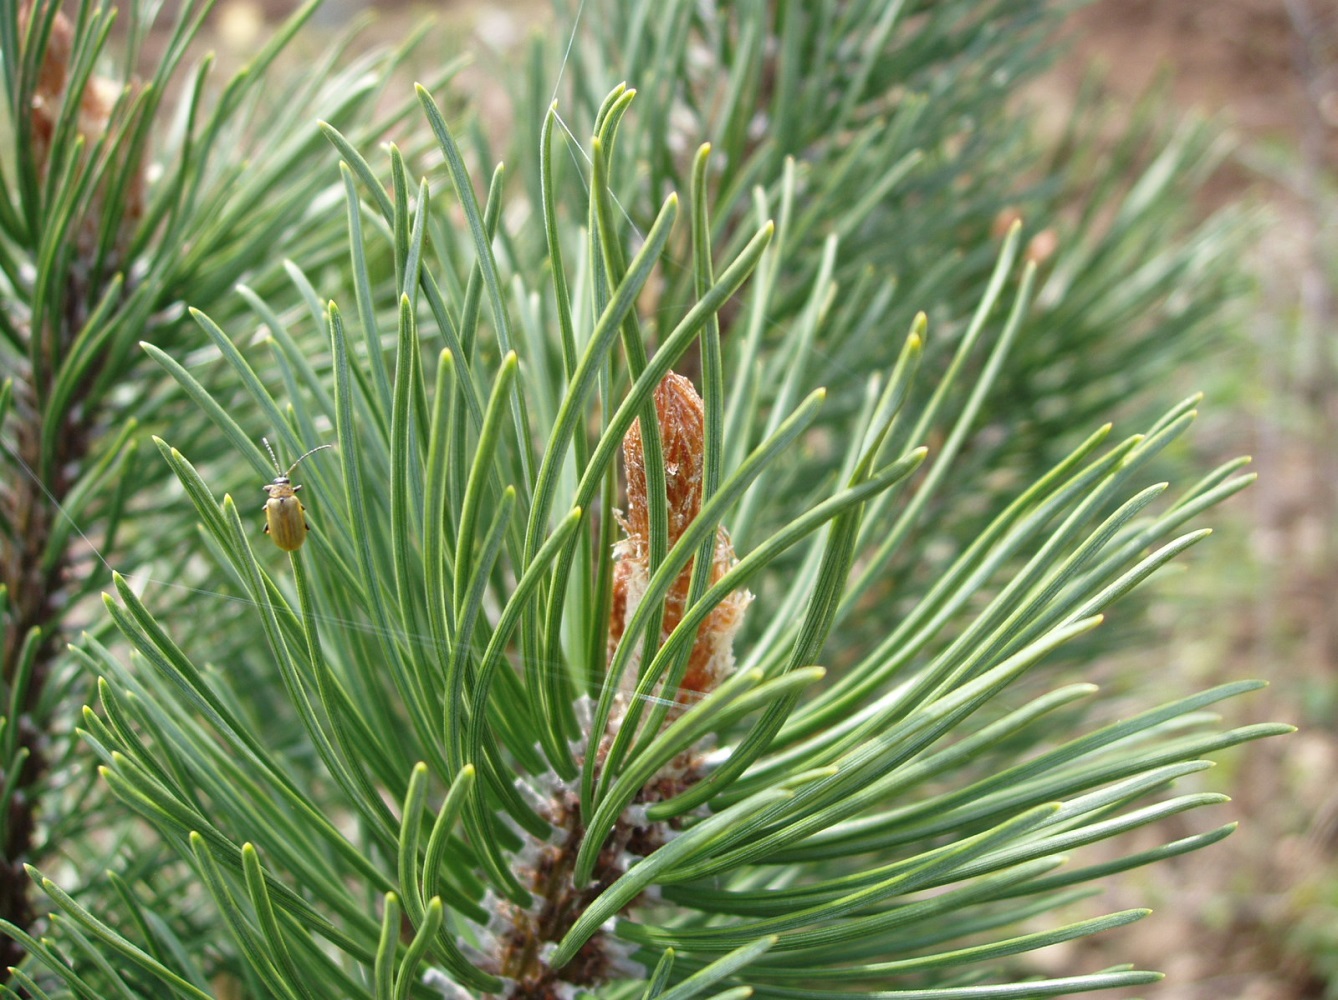 Хвойные побеги. Pinus Sylvestris побег. Pinus Sylvestris почки. Сосна обыкновенная Pinus Sylvestris семена. Сосновый вертун сосны обыкновенной.